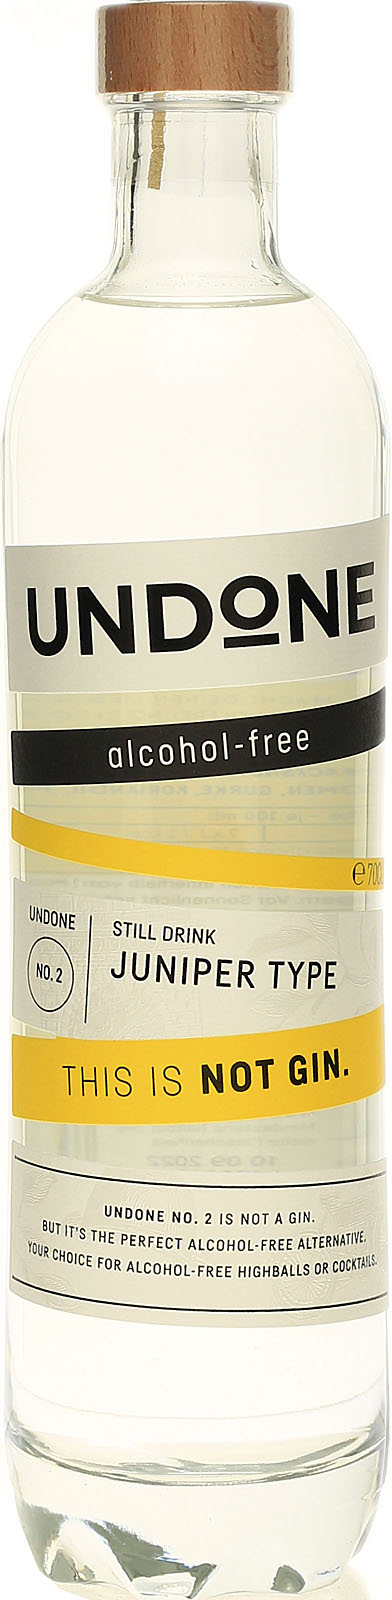 Juniper Type No. Gin - - hier Not kaufen 2 Undone